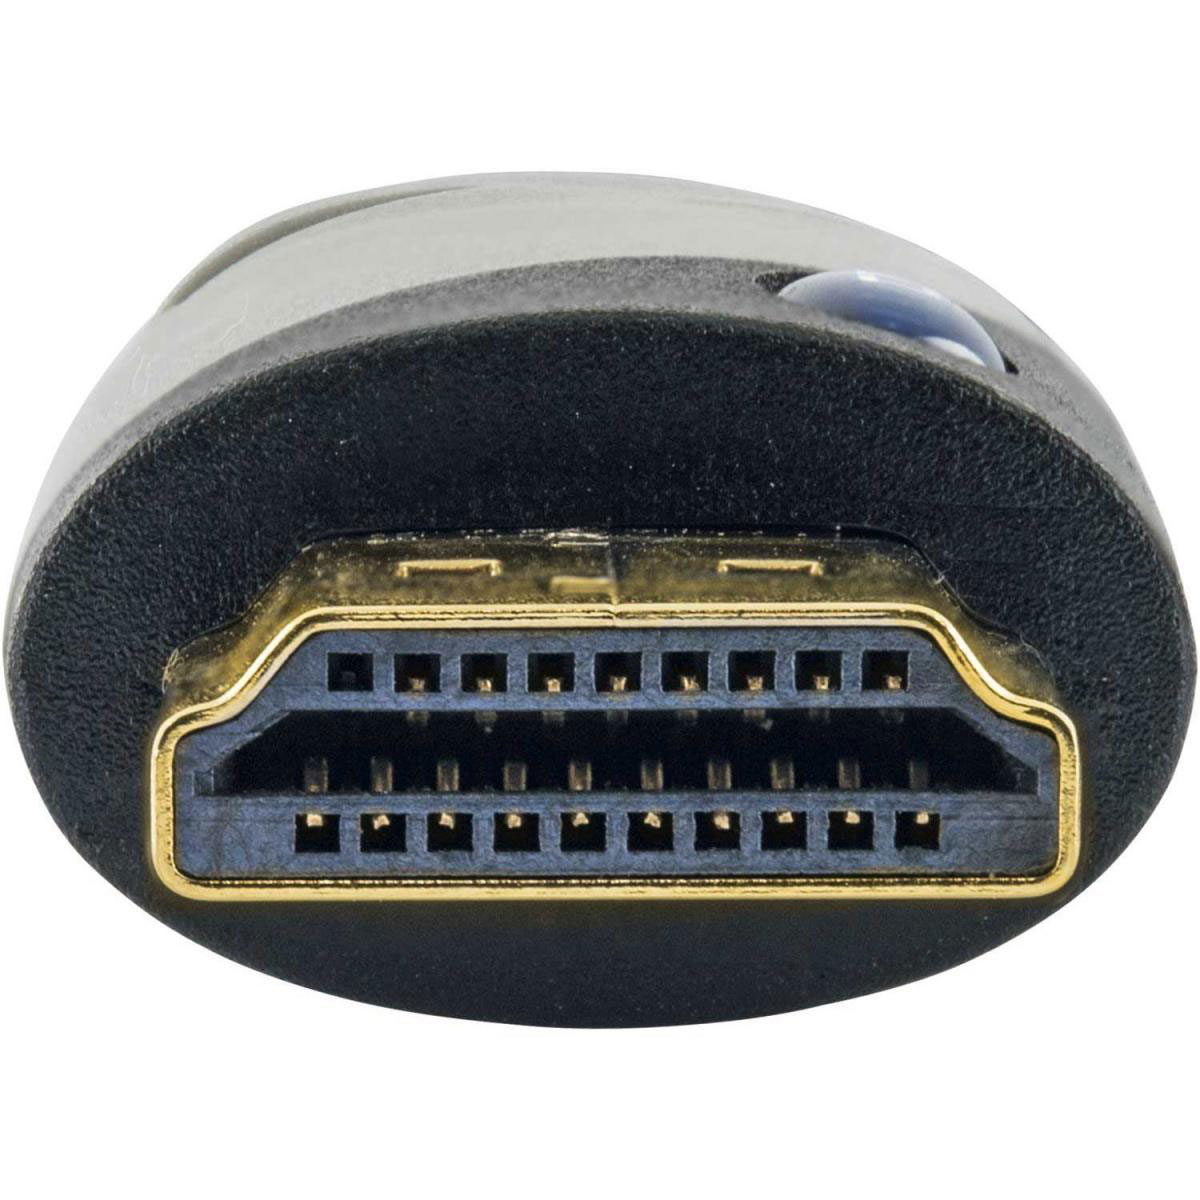 HDMI-Flachverbinder schwarz, 1,5 m